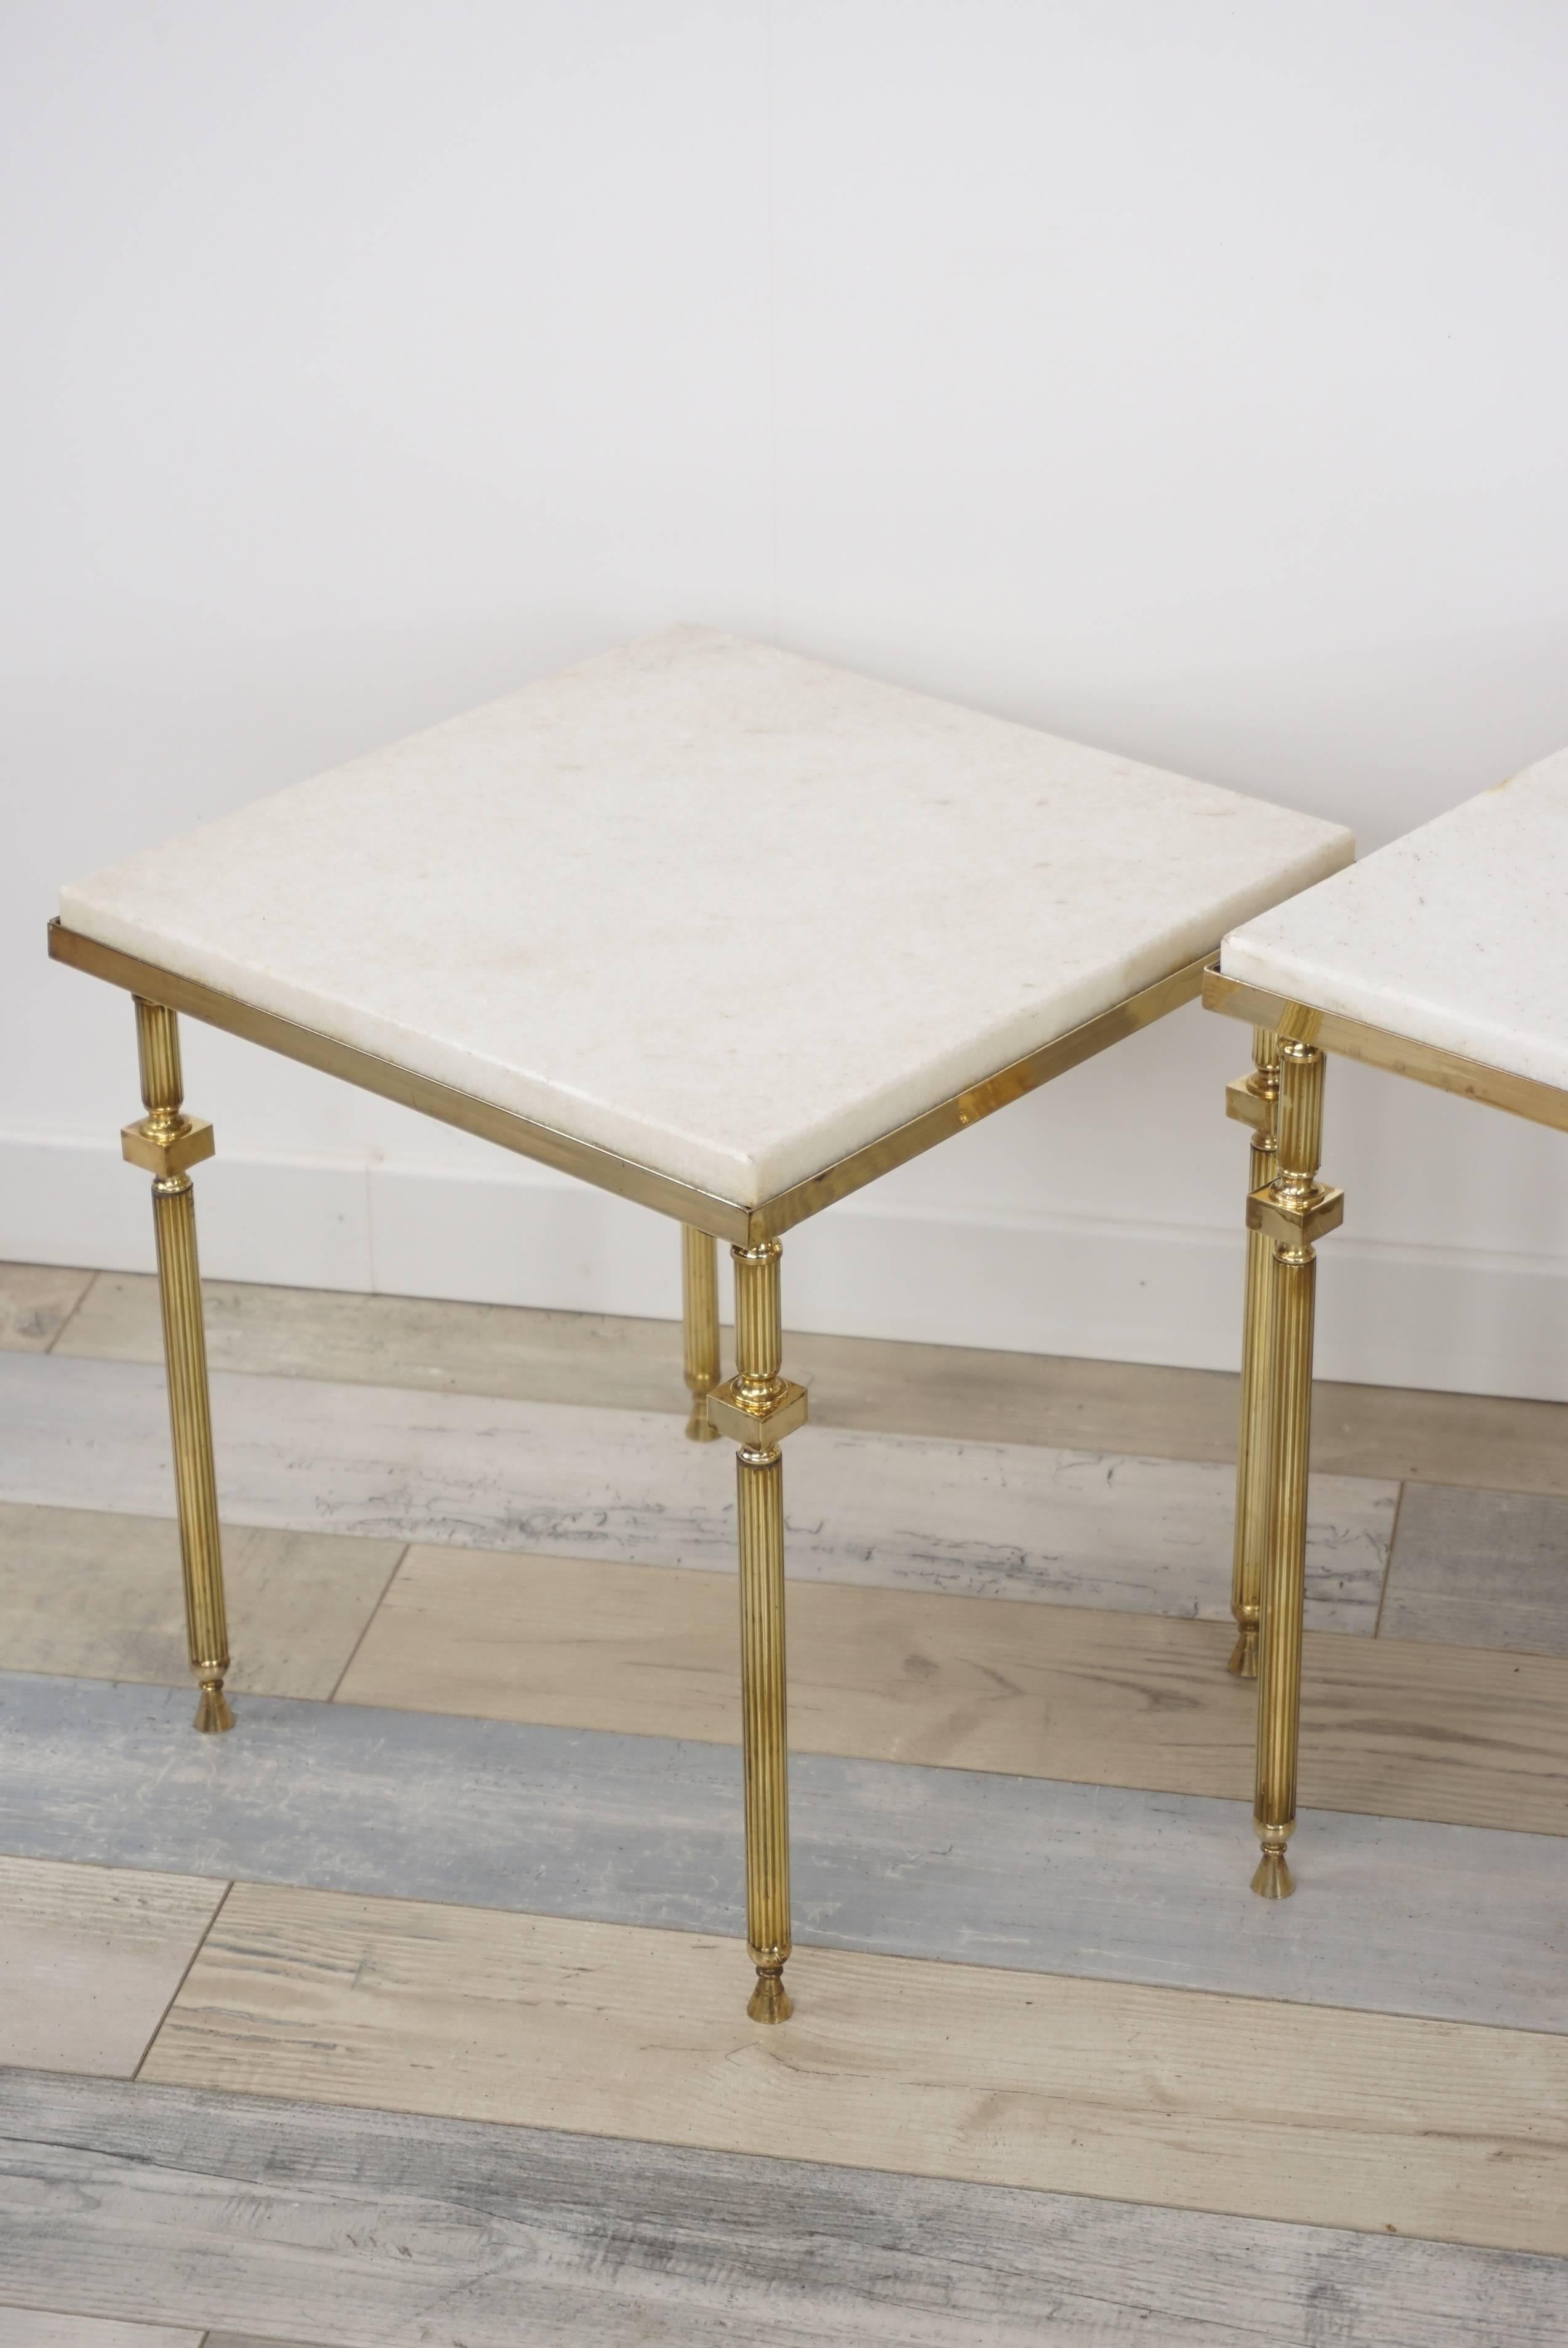 Ensemble de tables gigognes en laiton et marbre blanc attribué à la Maison Baguès (mesure : H 44cm/ L 54.5cm/ P 39.5cm - H 40cm/ L 45.5cm/ P 36.5cm - H 37cm/ L 35.5cm/P 34.5cm).